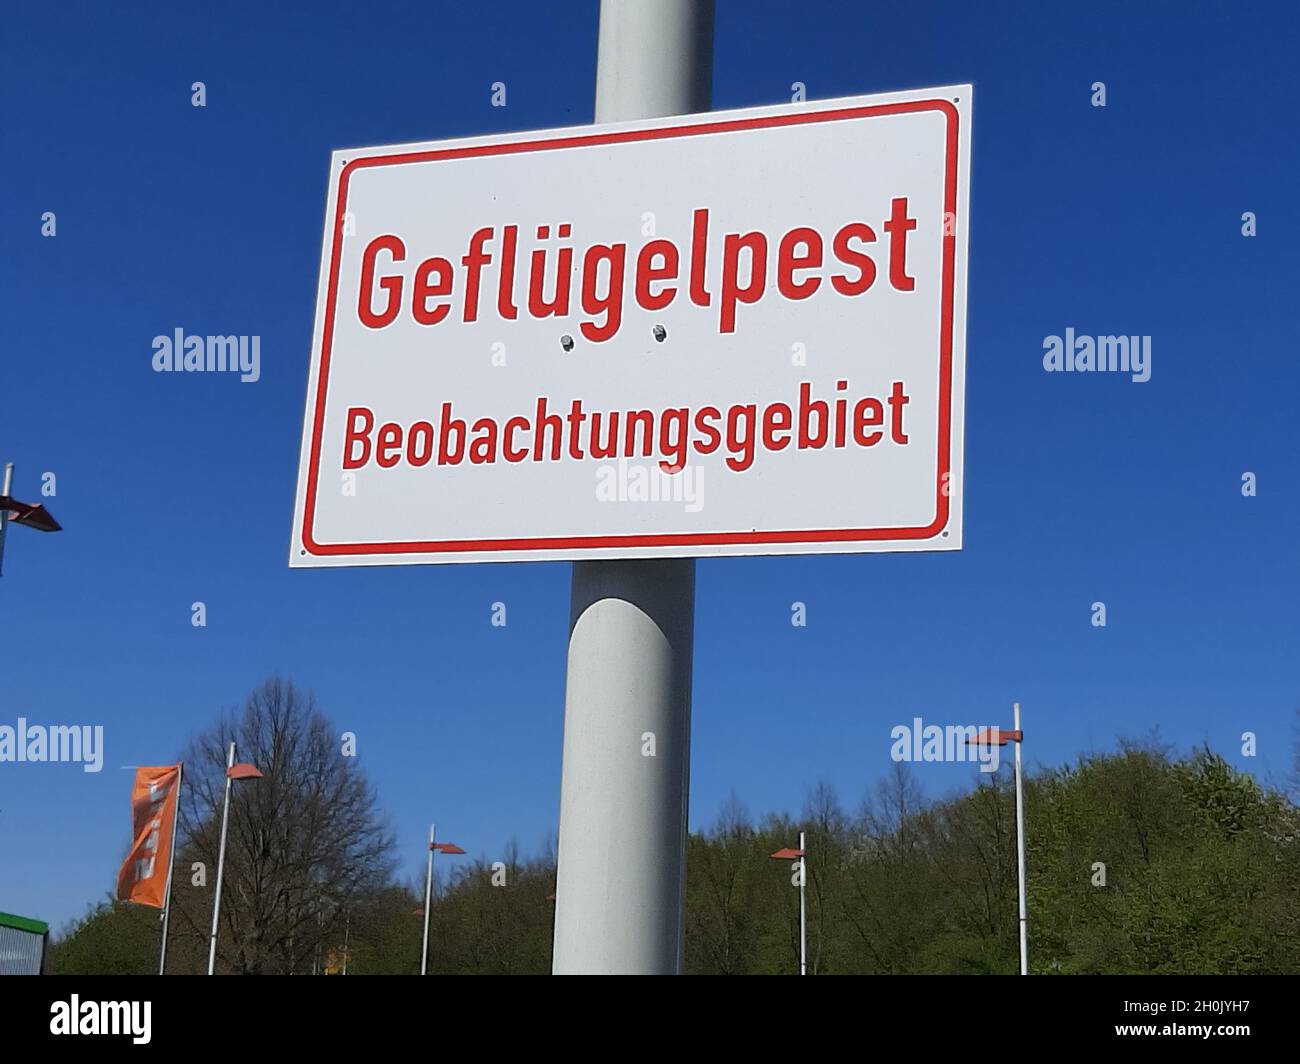 schild Geflügelpest Beobachtungsgebiet, Vogelgrippe, Beobachtungsgebiet, Deutschland Stockfoto